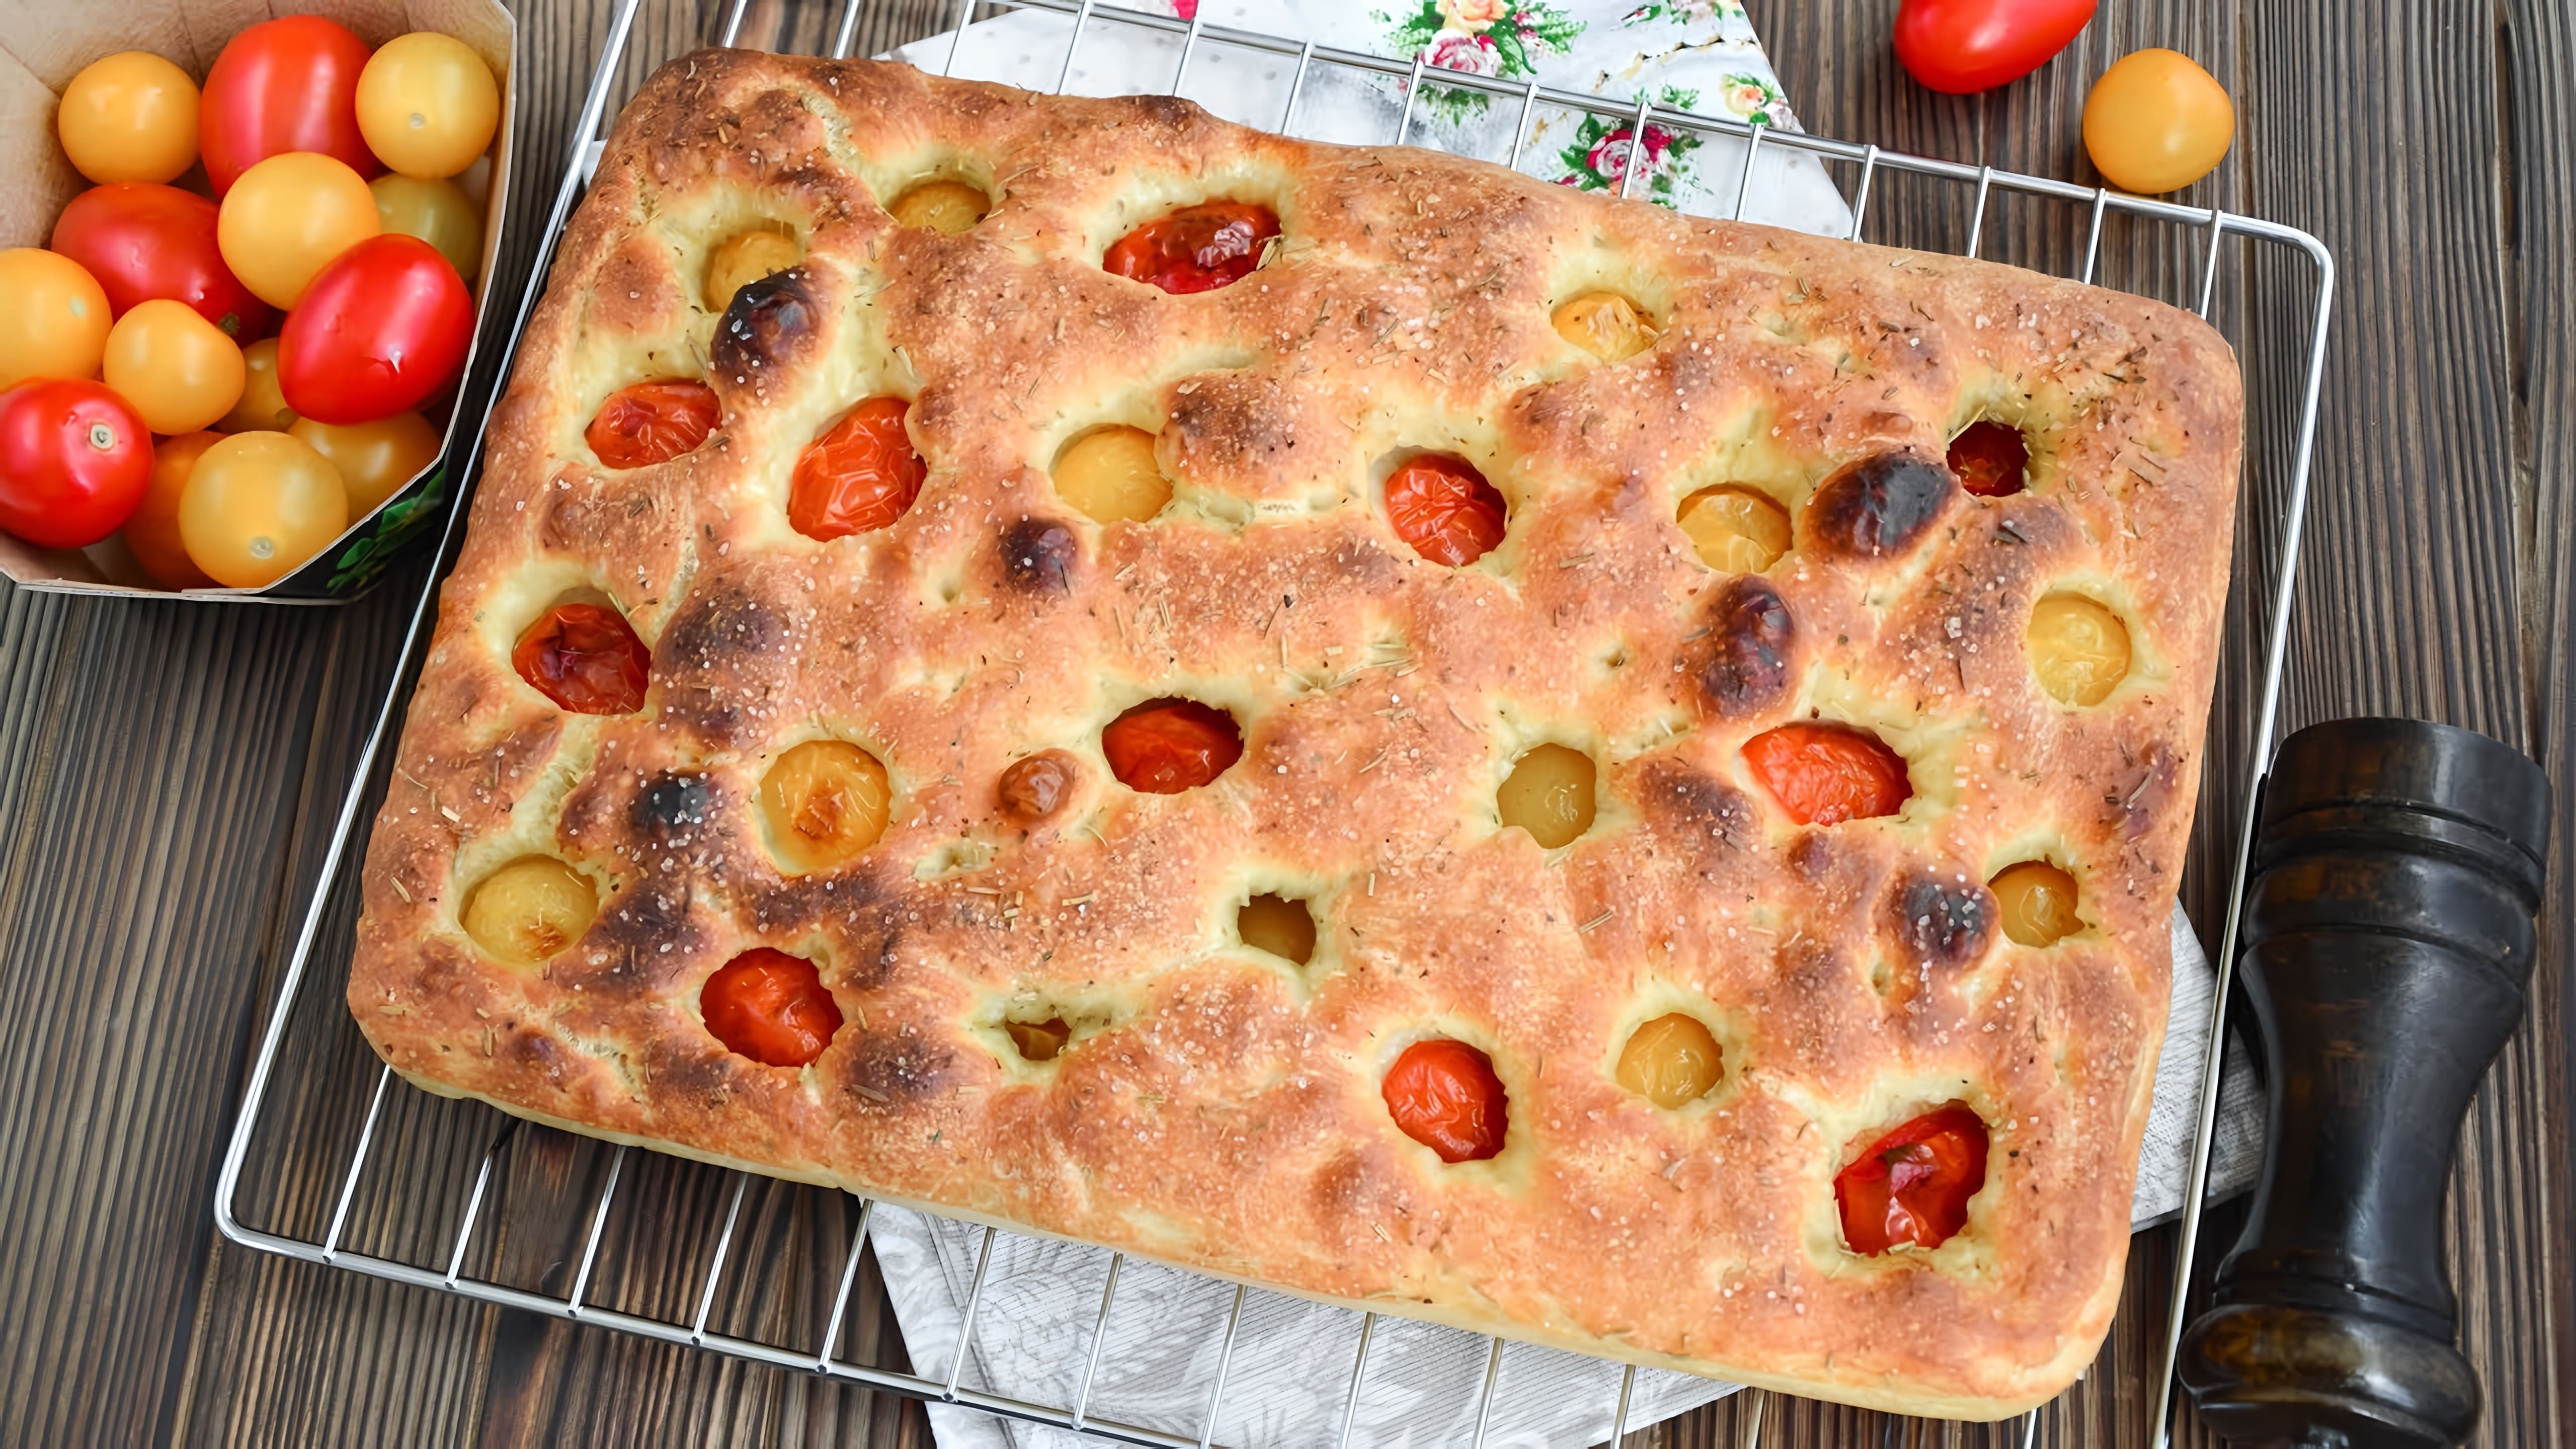 В этом видео демонстрируется рецепт приготовления итальянского хлеба фокачча